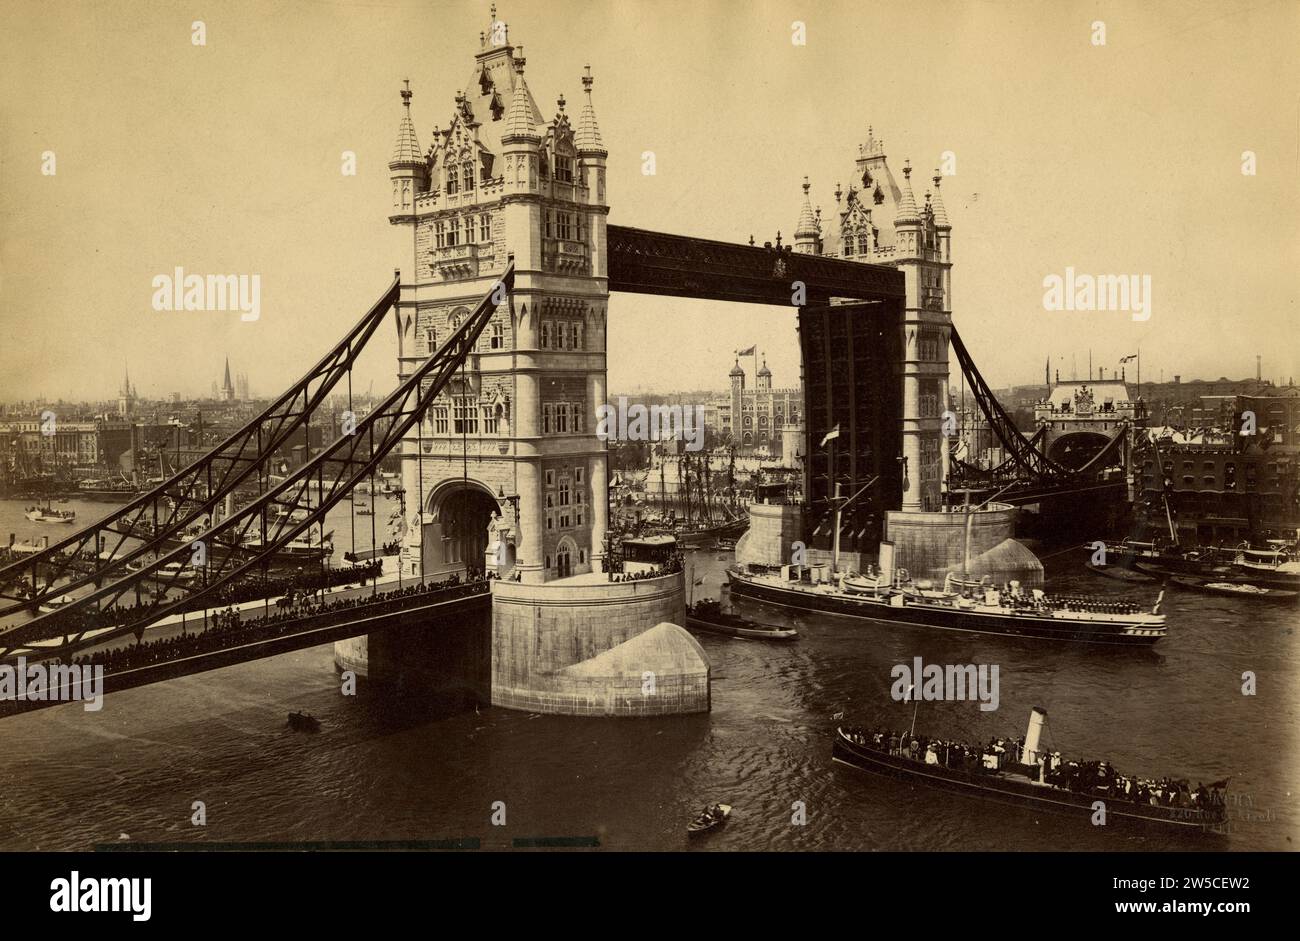 Stampa di albume del Tower Bridge aperta con una nave che passa attraverso, la Torre di Londra sullo sfondo, fine del XIX secolo Foto Stock